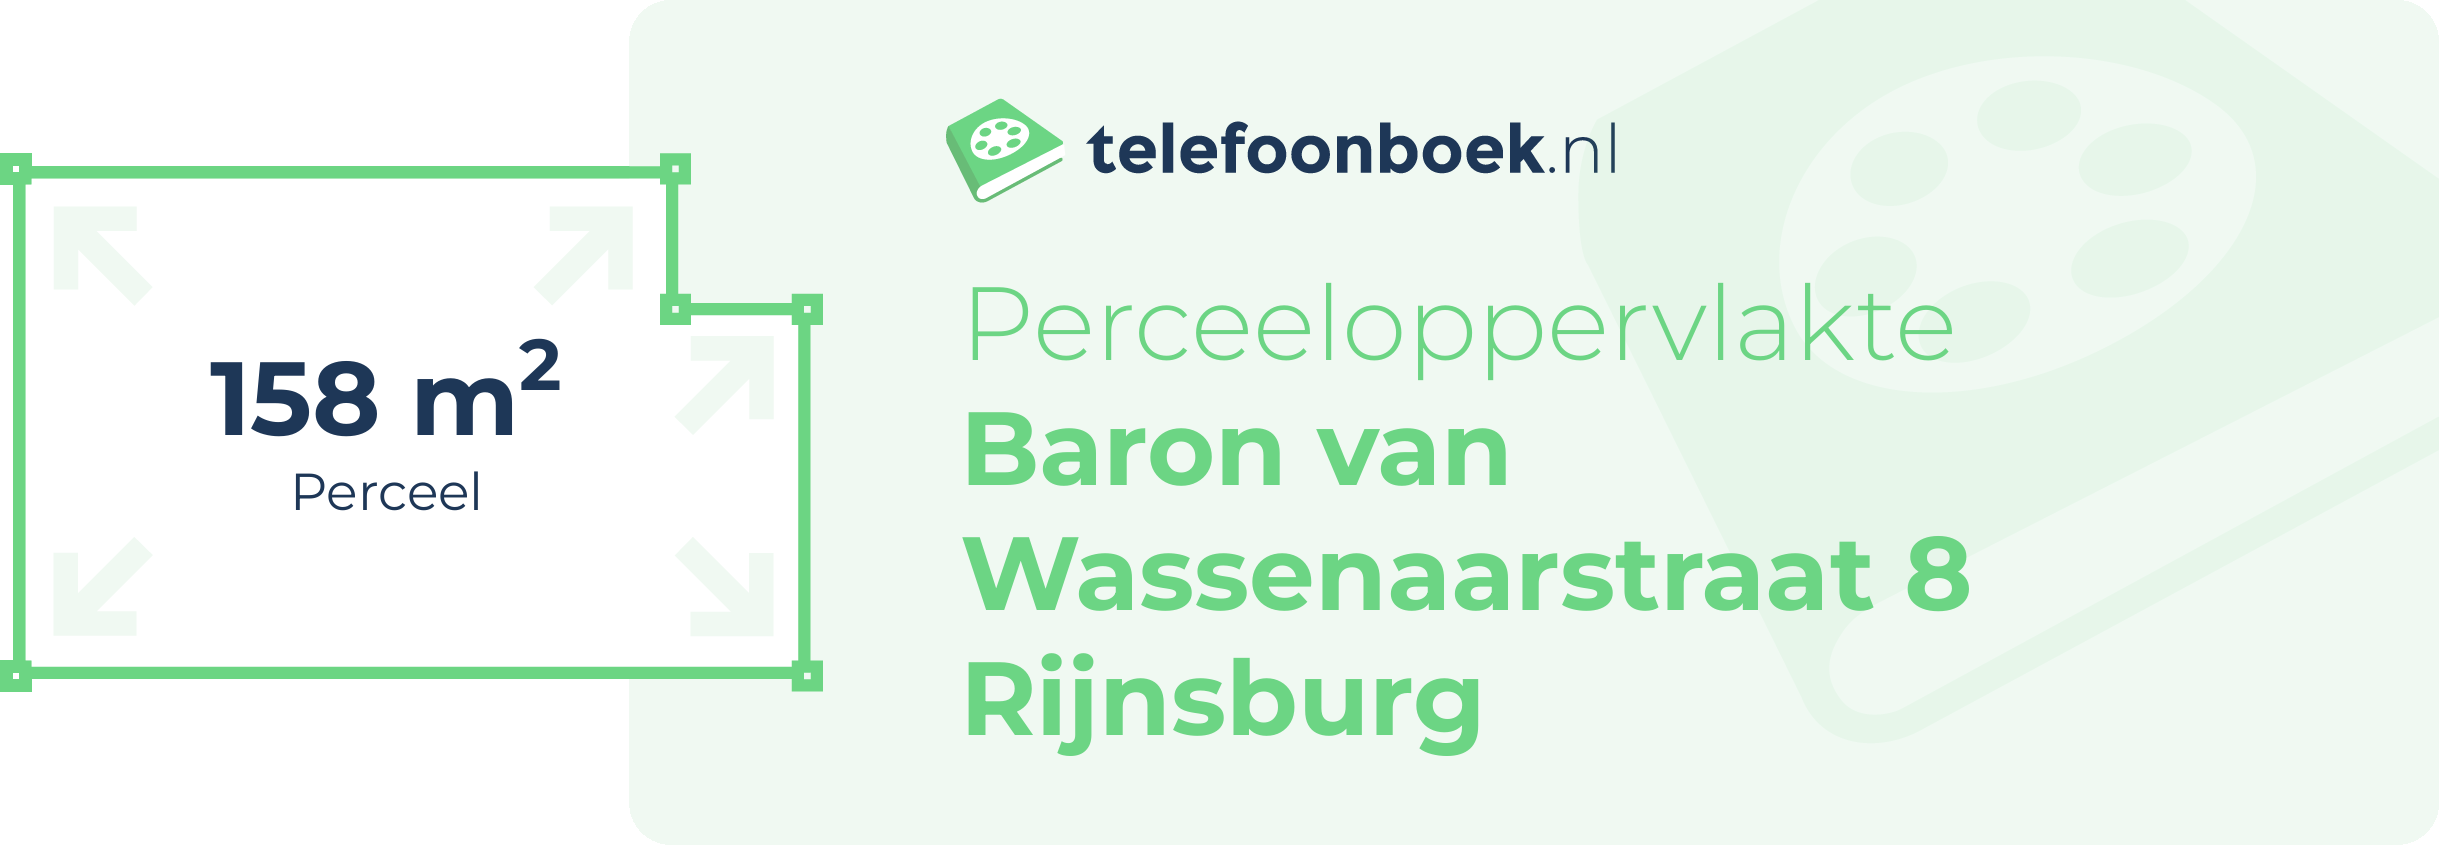 Perceeloppervlakte Baron Van Wassenaarstraat 8 Rijnsburg